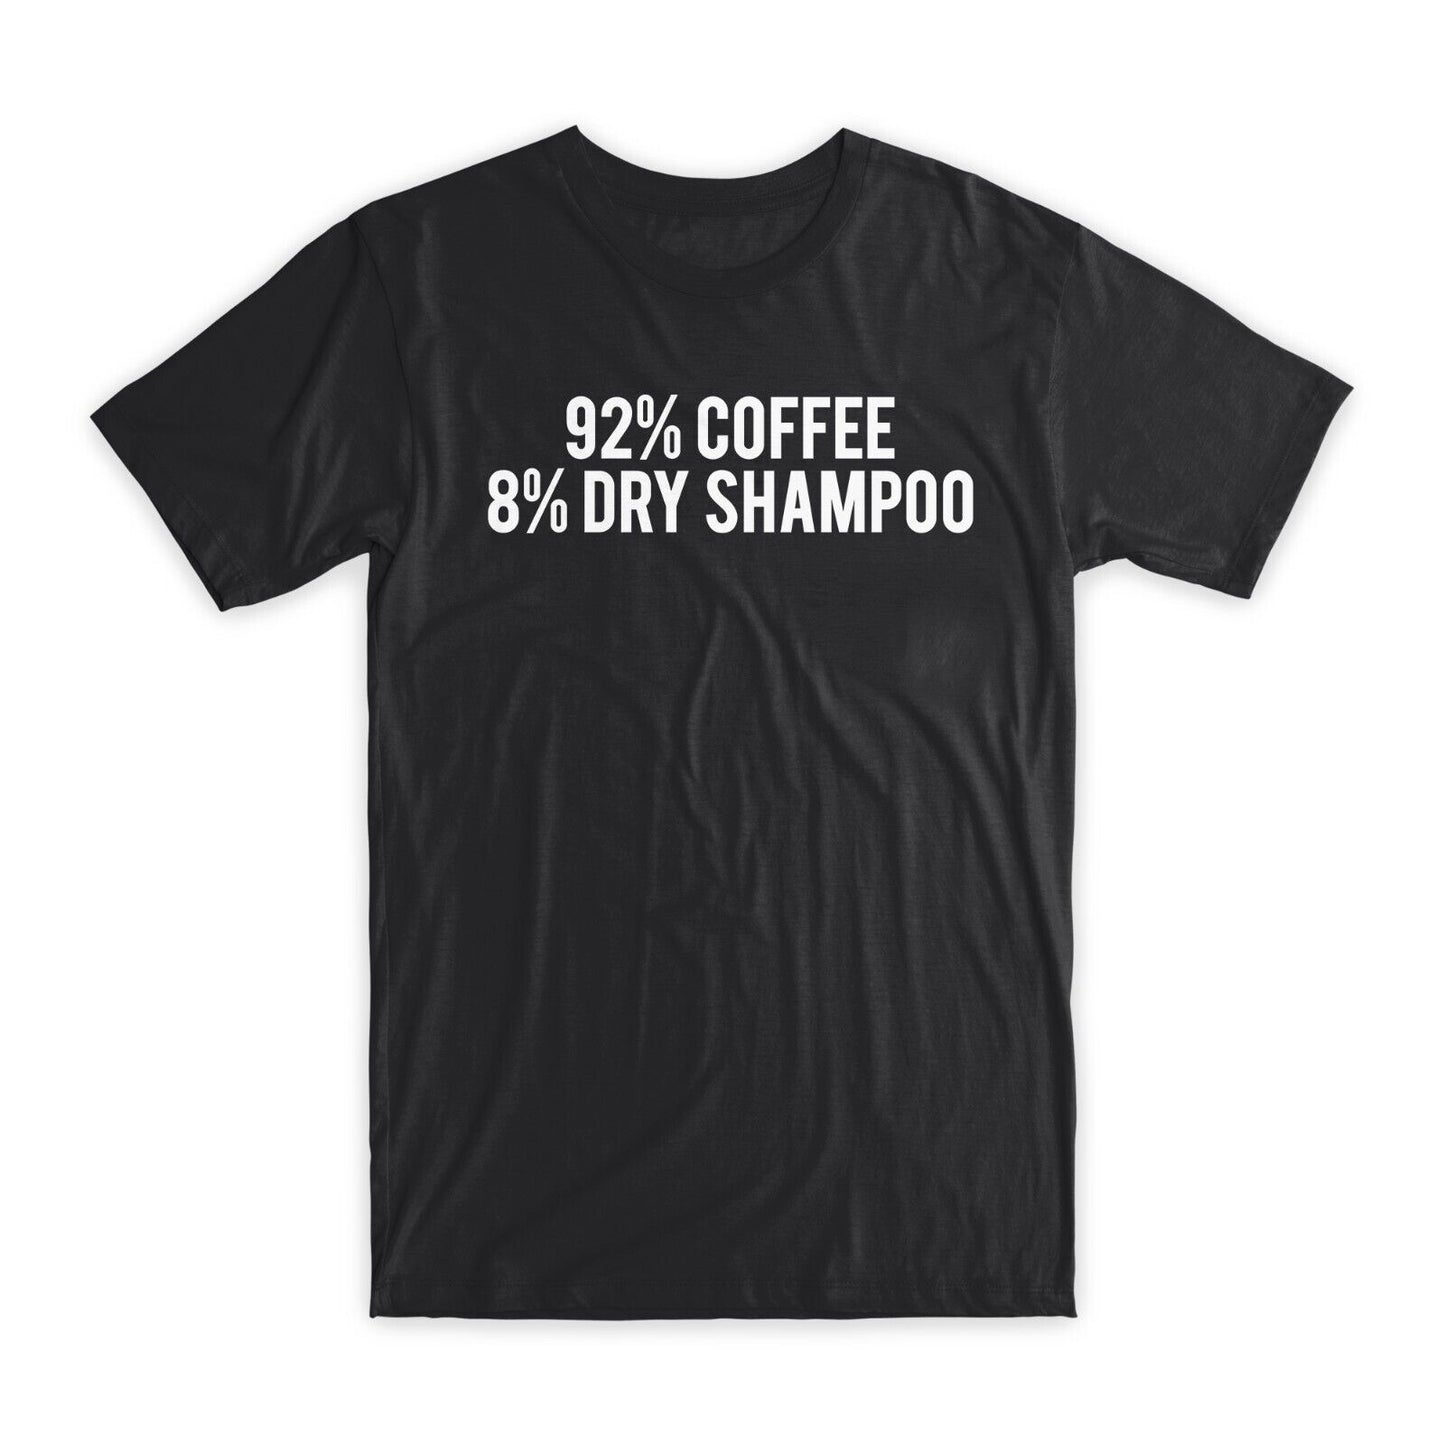 92% Coffee 8% Dry Shampoo T-Shirt Premium Cotton Funny Tees, Black/Gray NEW